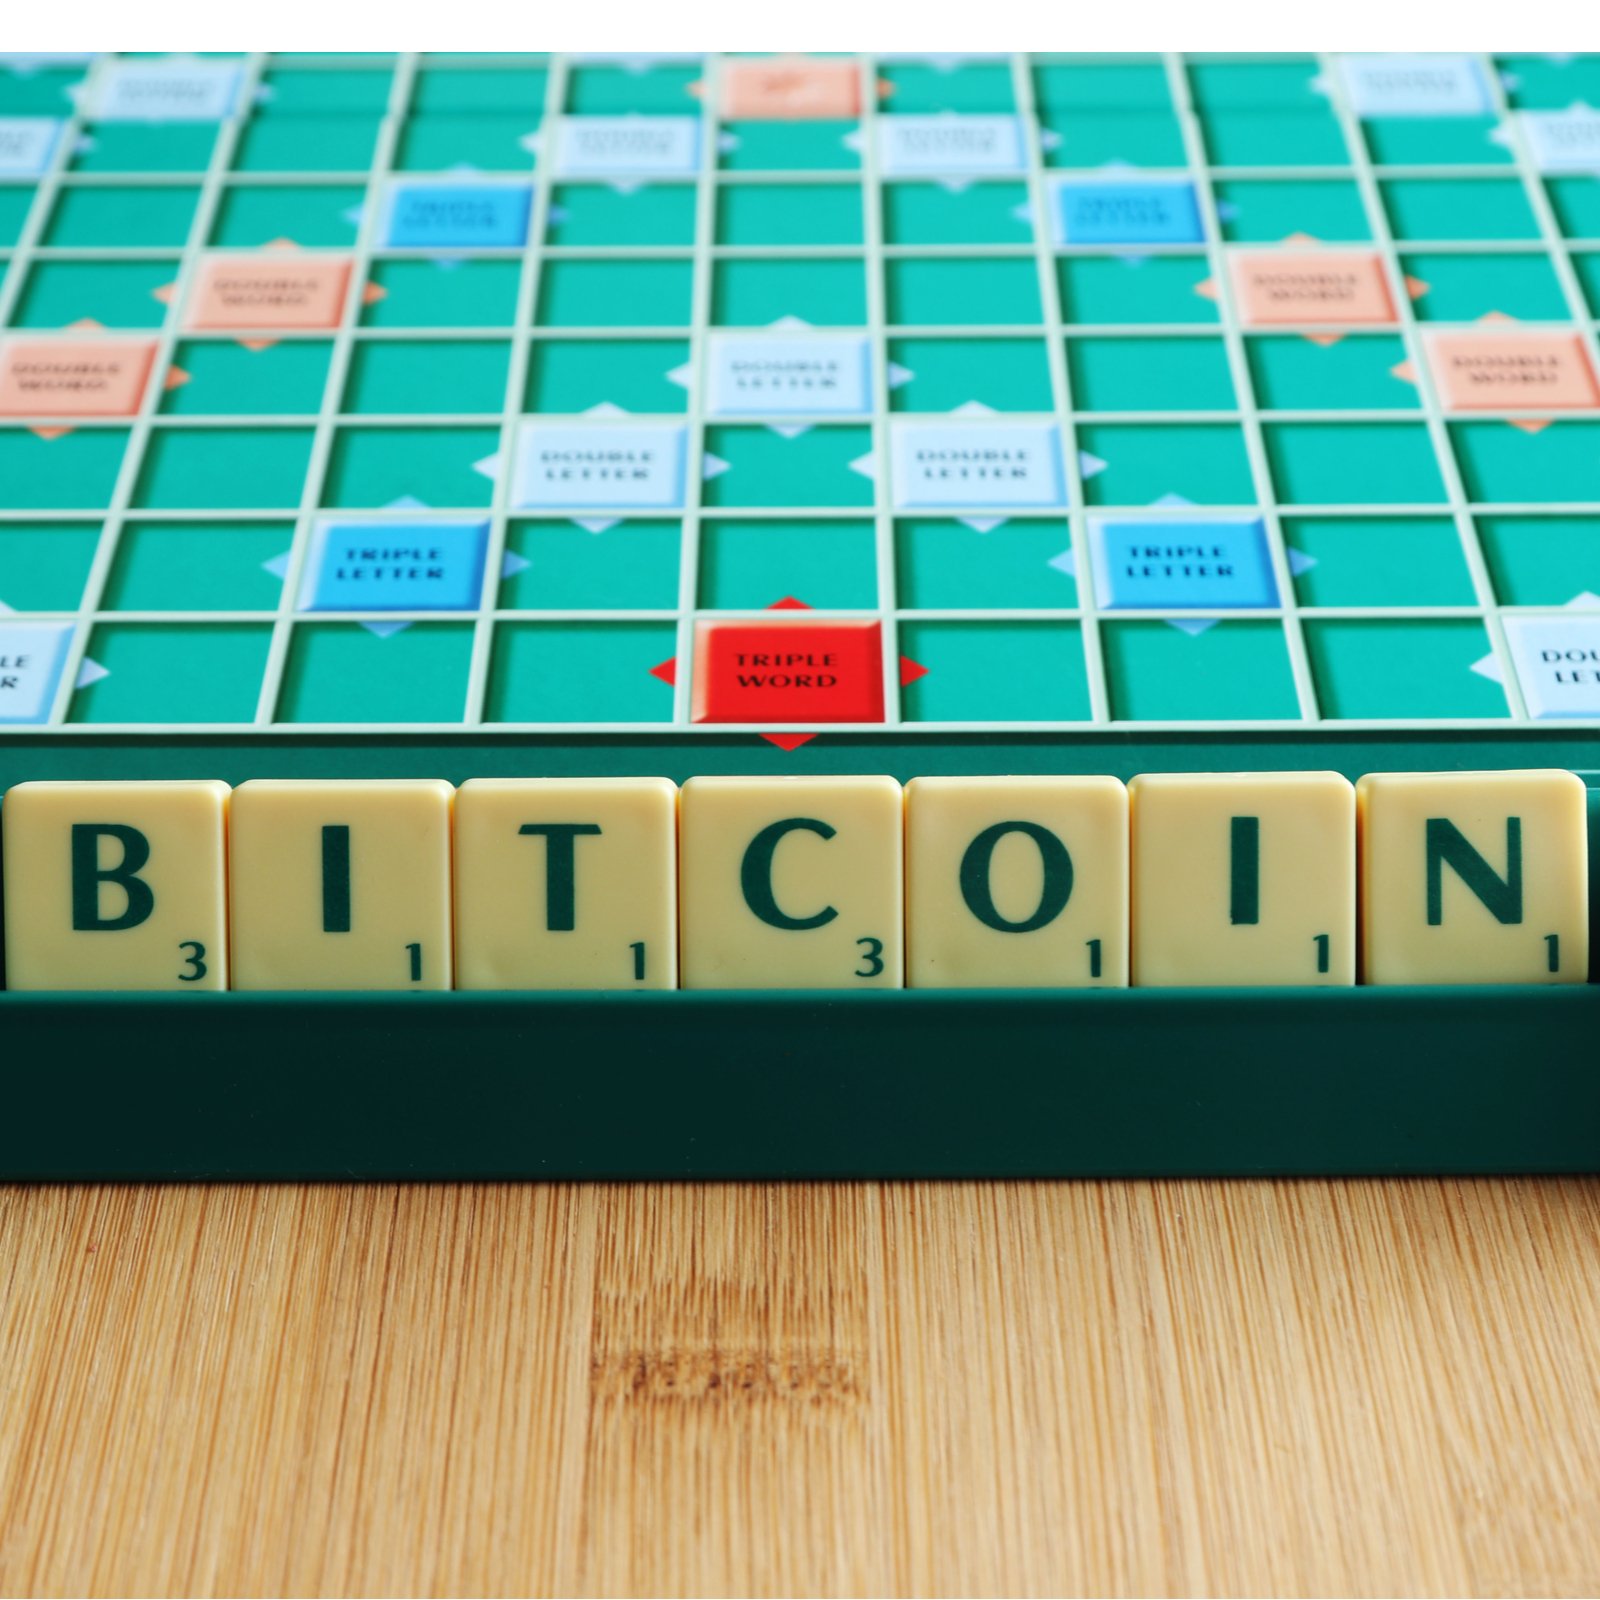 Bitcoin Enters the Scrabble Lexicon